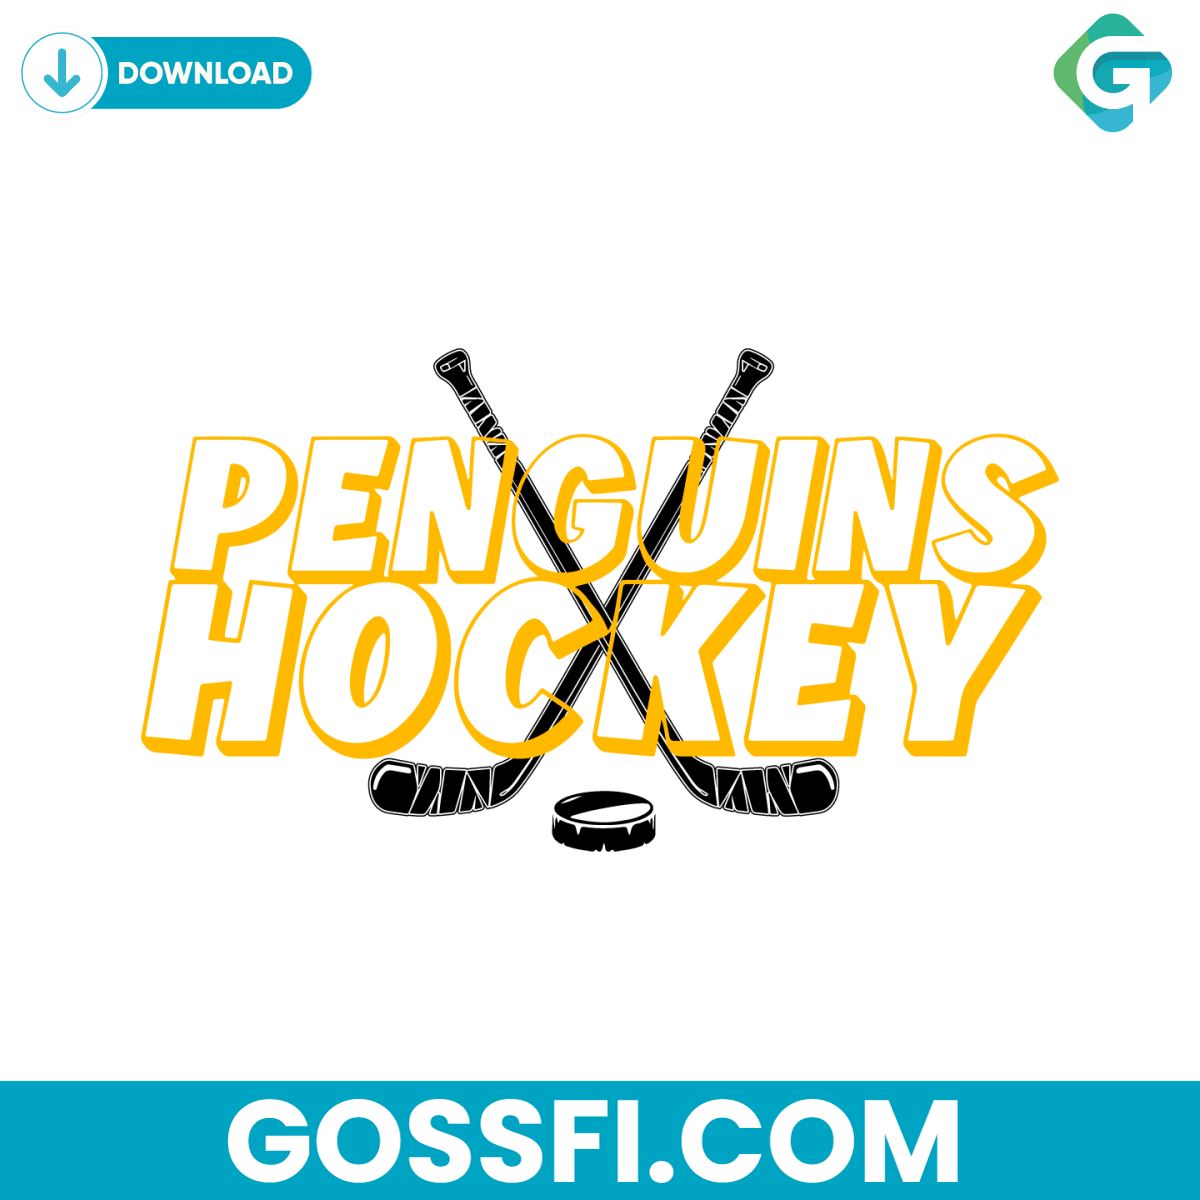 penguins-hockey-nhl-pittsburgh-svg-digital-download